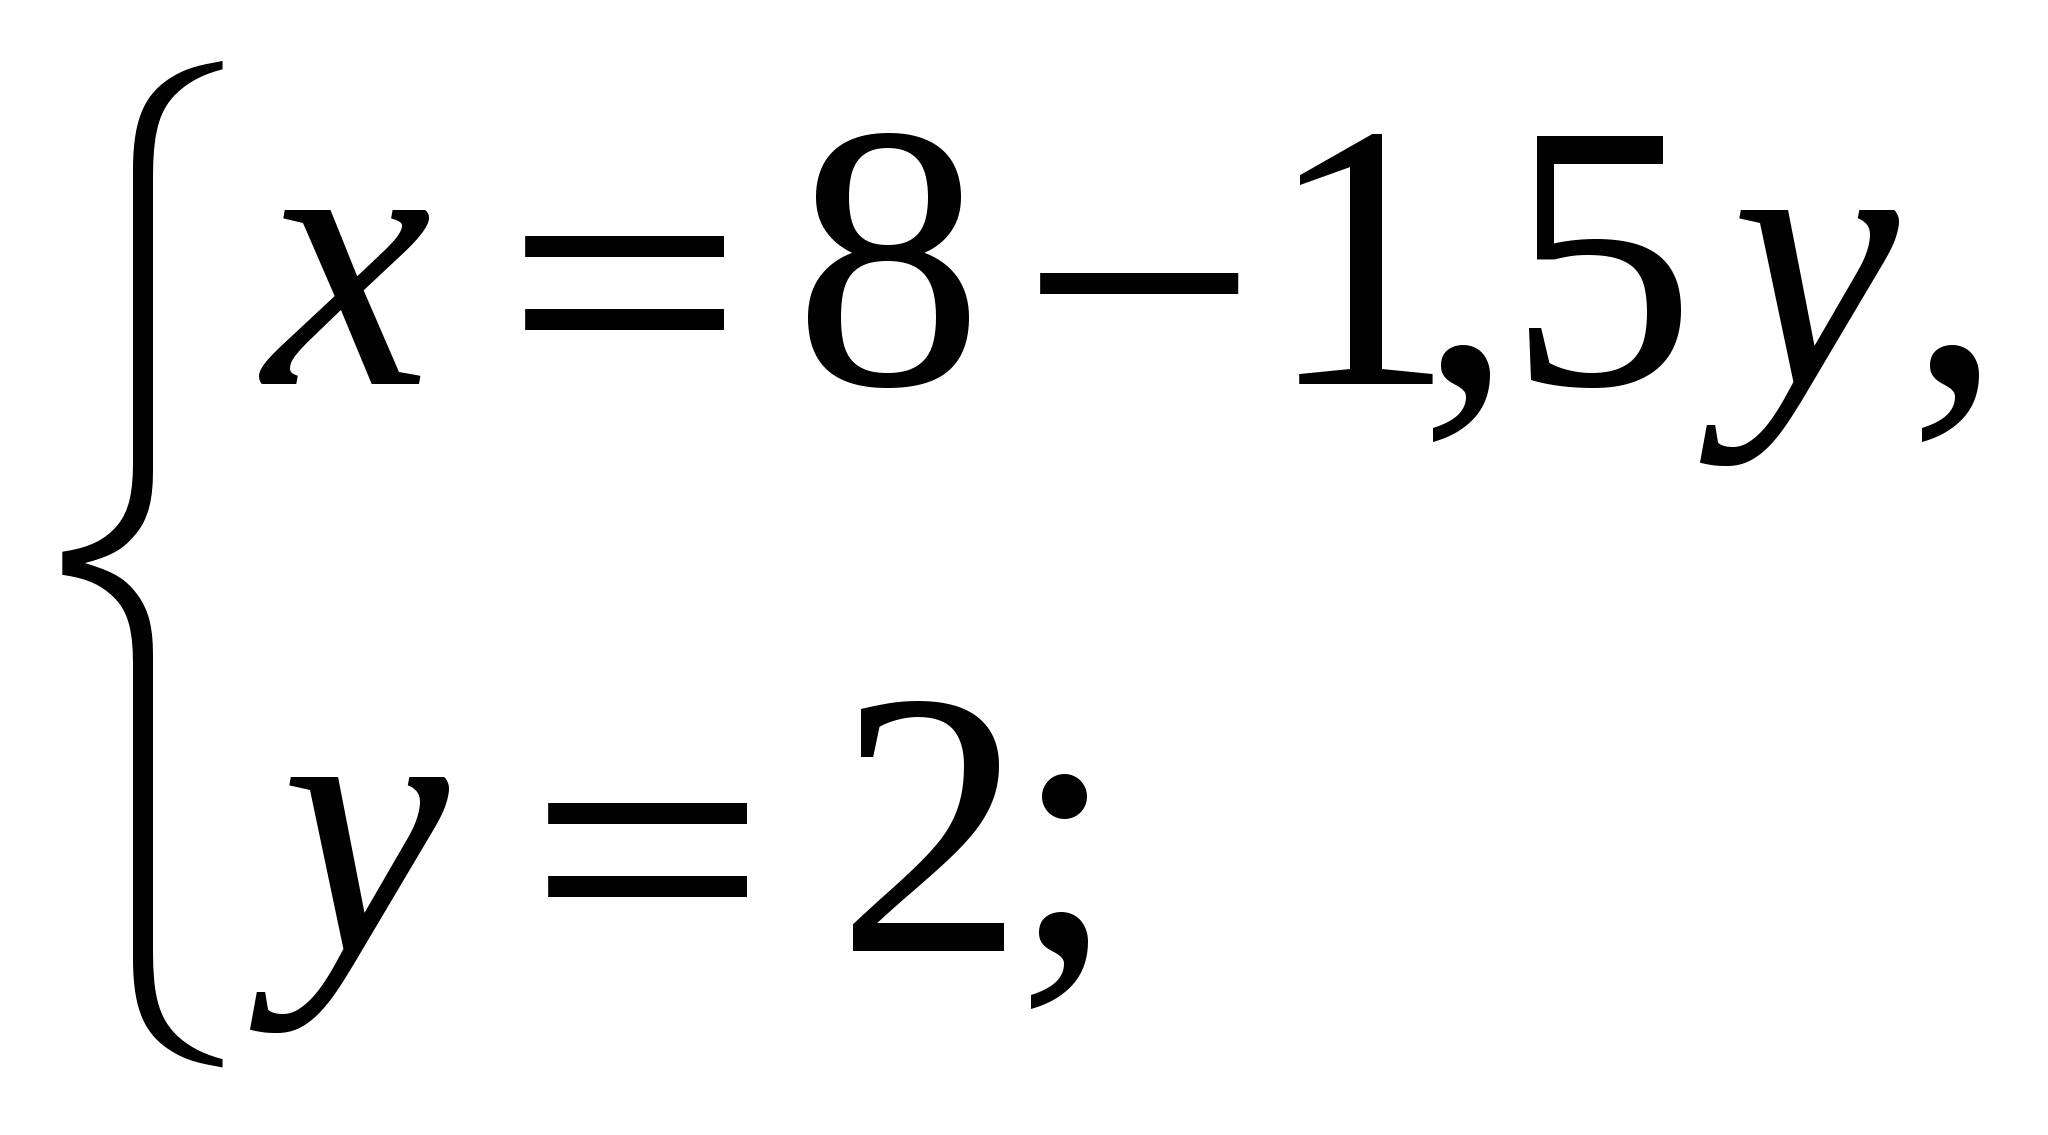 Формирование рефлексивности у школьников на уроках математики